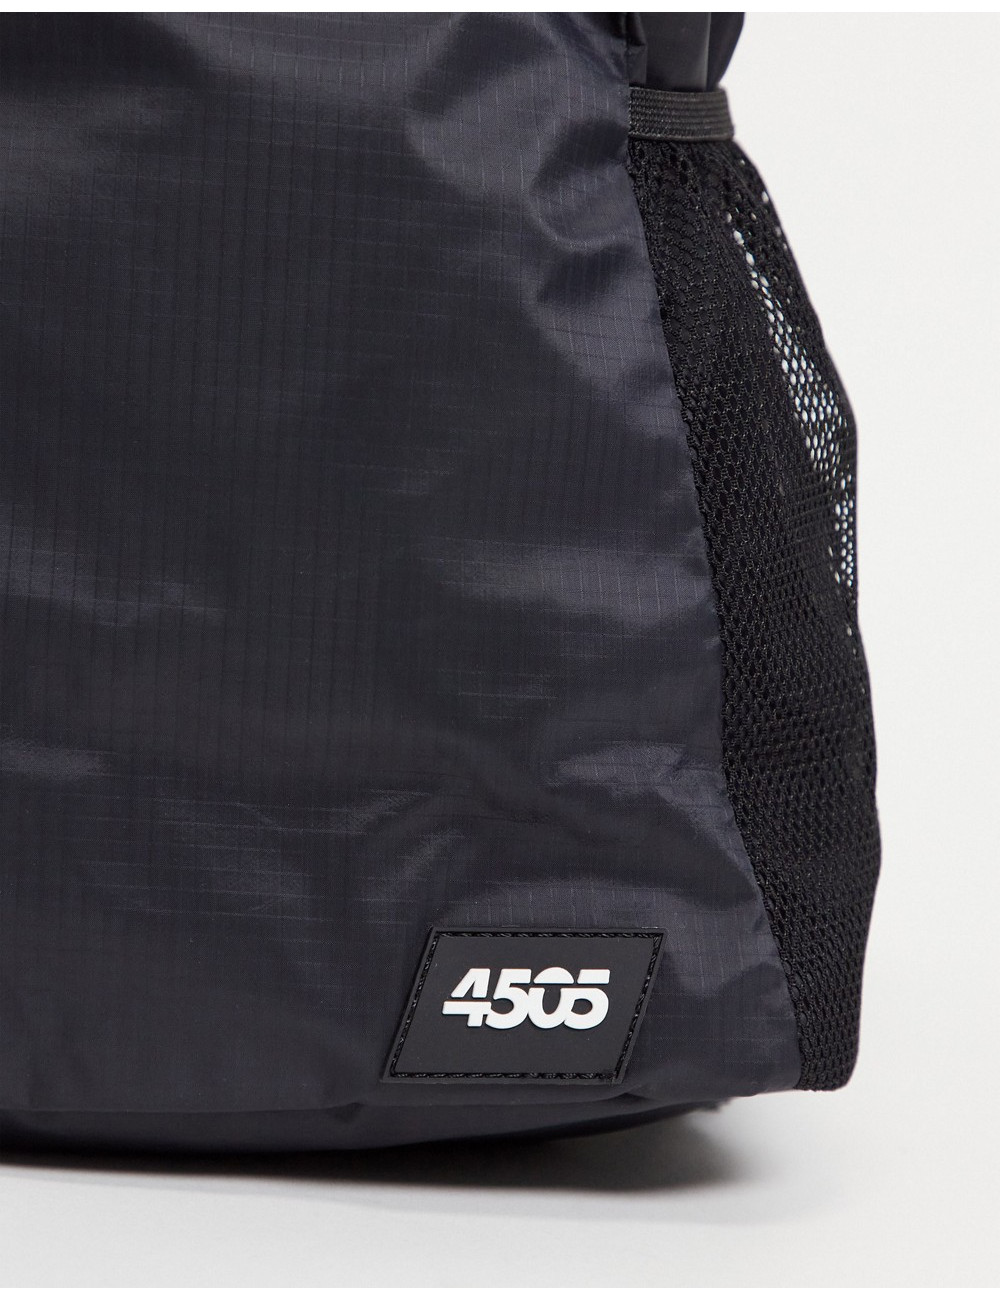 ASOS 4505 running gym bag...